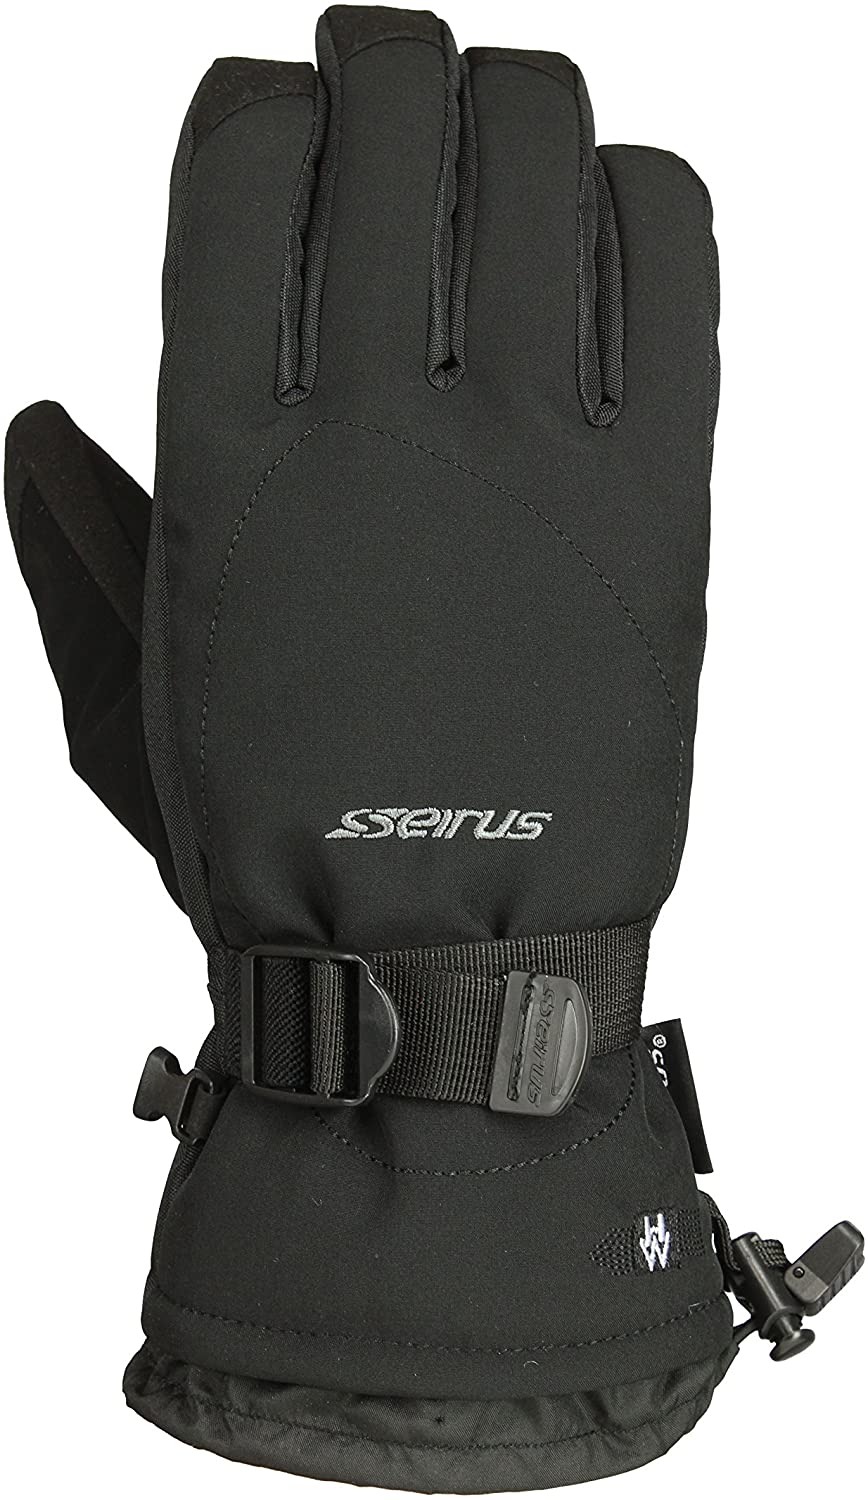 Seirus Innovation Heatwave Zenith Glove Men'S - Black - Medium